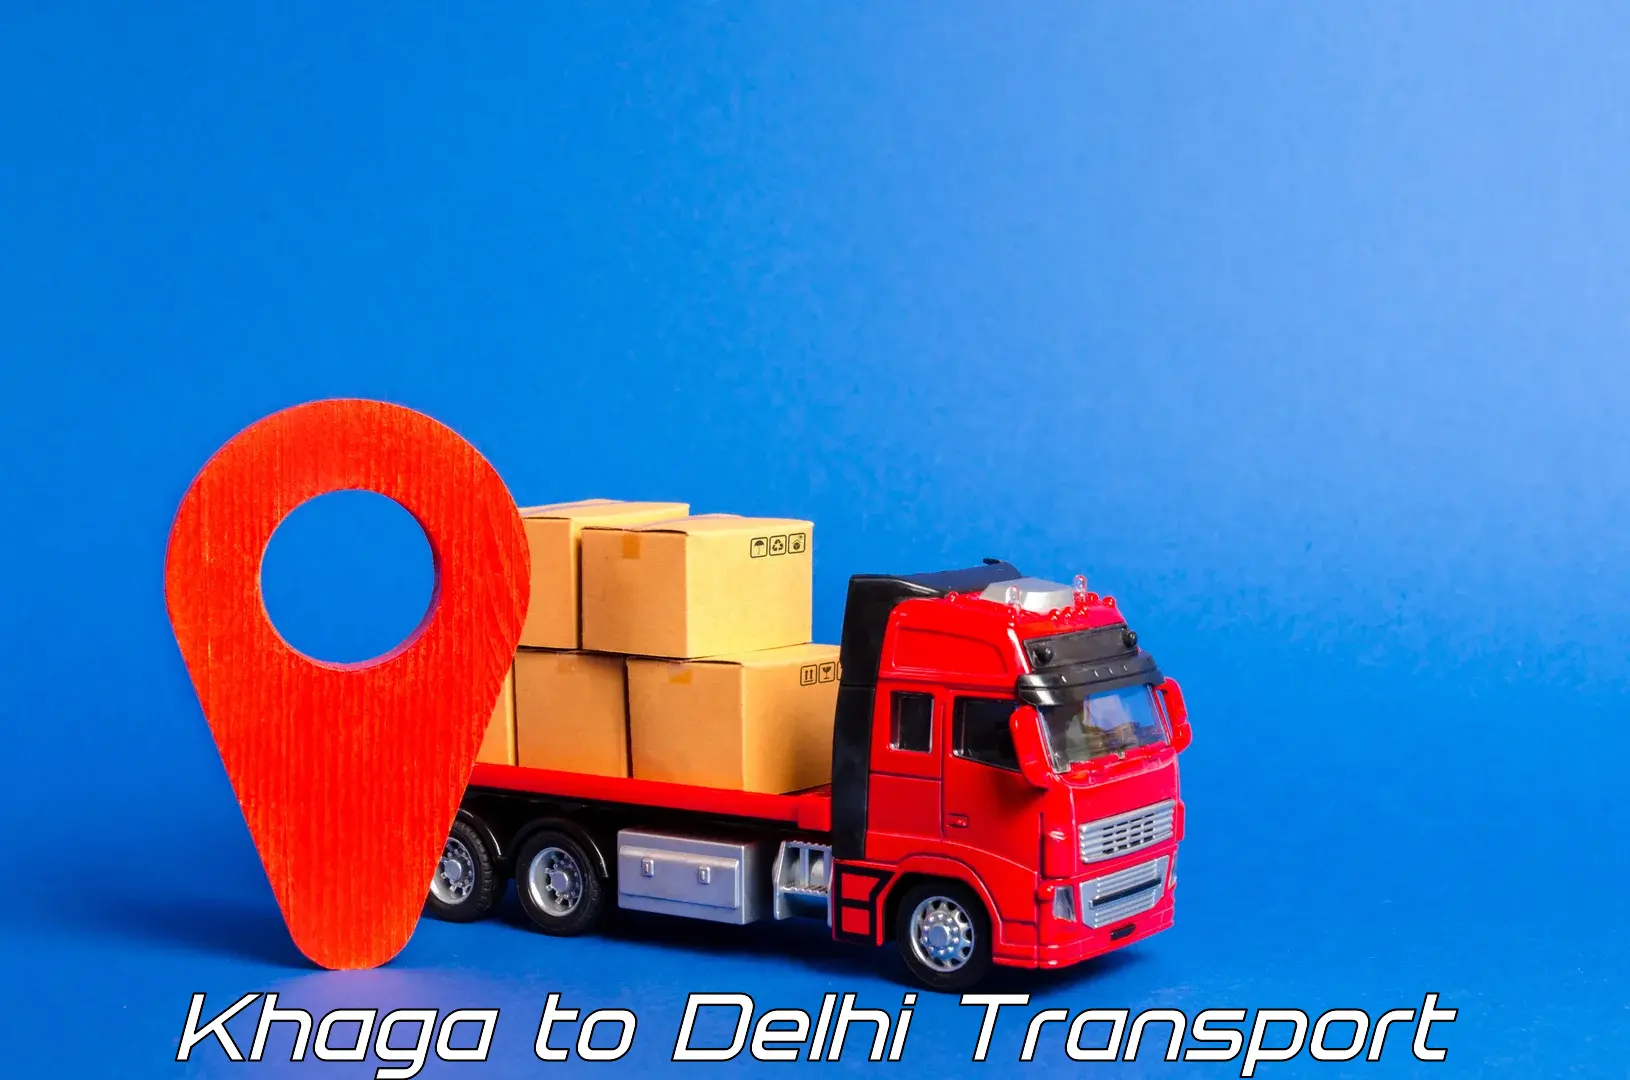 Transport in sharing Khaga to IIT Delhi